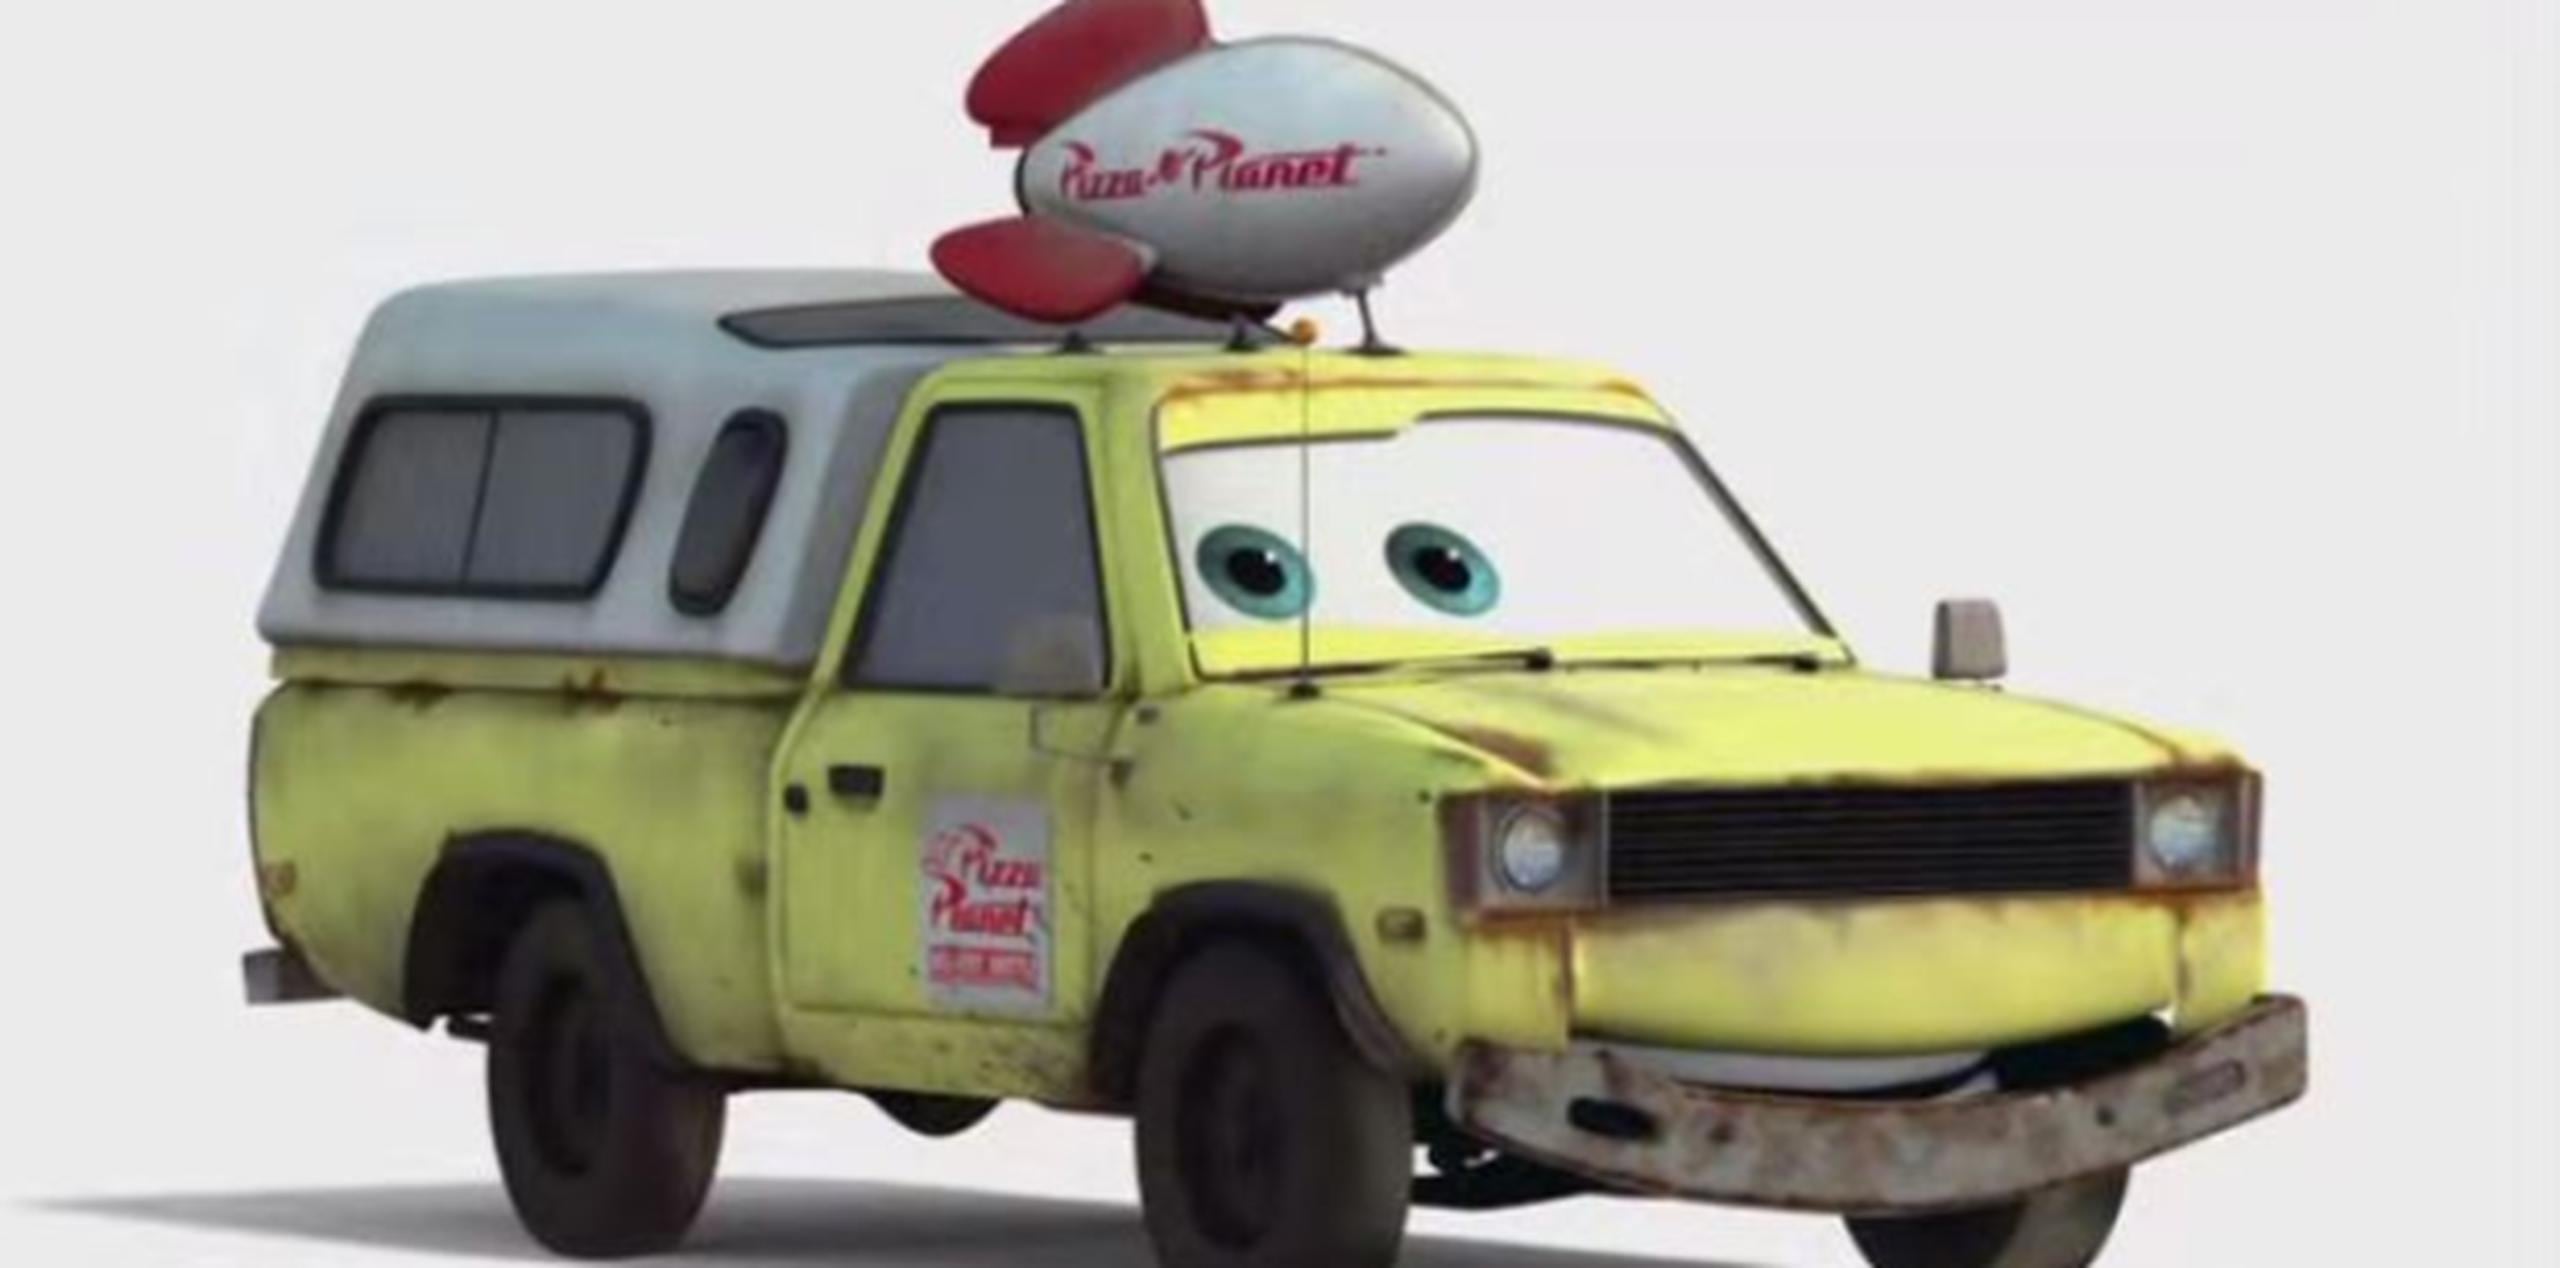 El carro de Pizza Planet es uno de los objetos que se ha camuflado en varias de sus historias. (Captura)